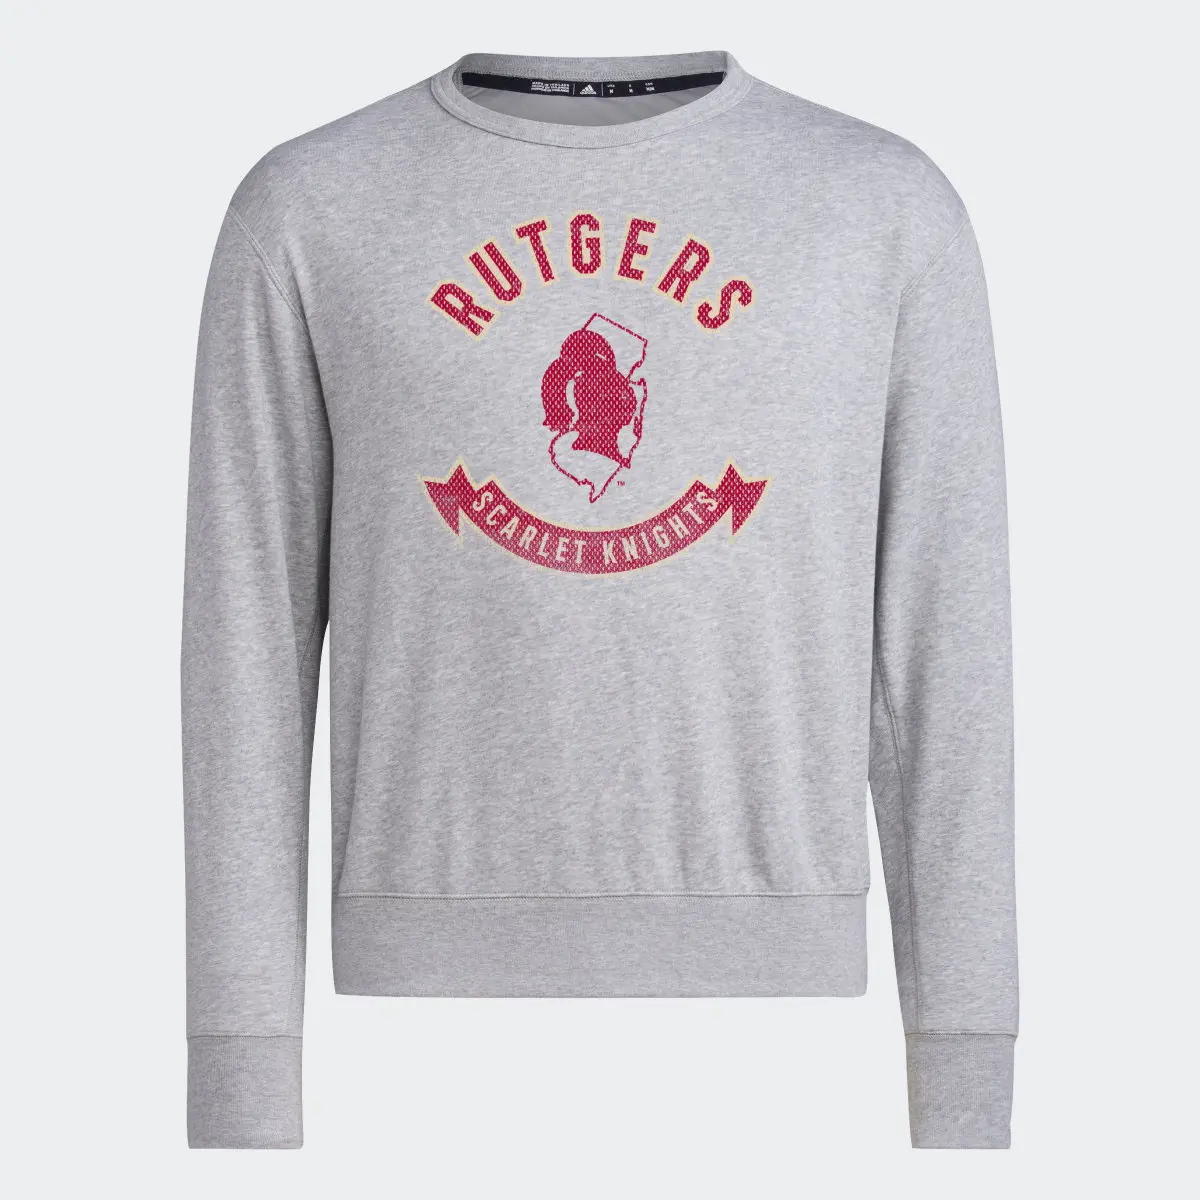 Adidas Rutgers Long Sleeve Sweatshirt. 1